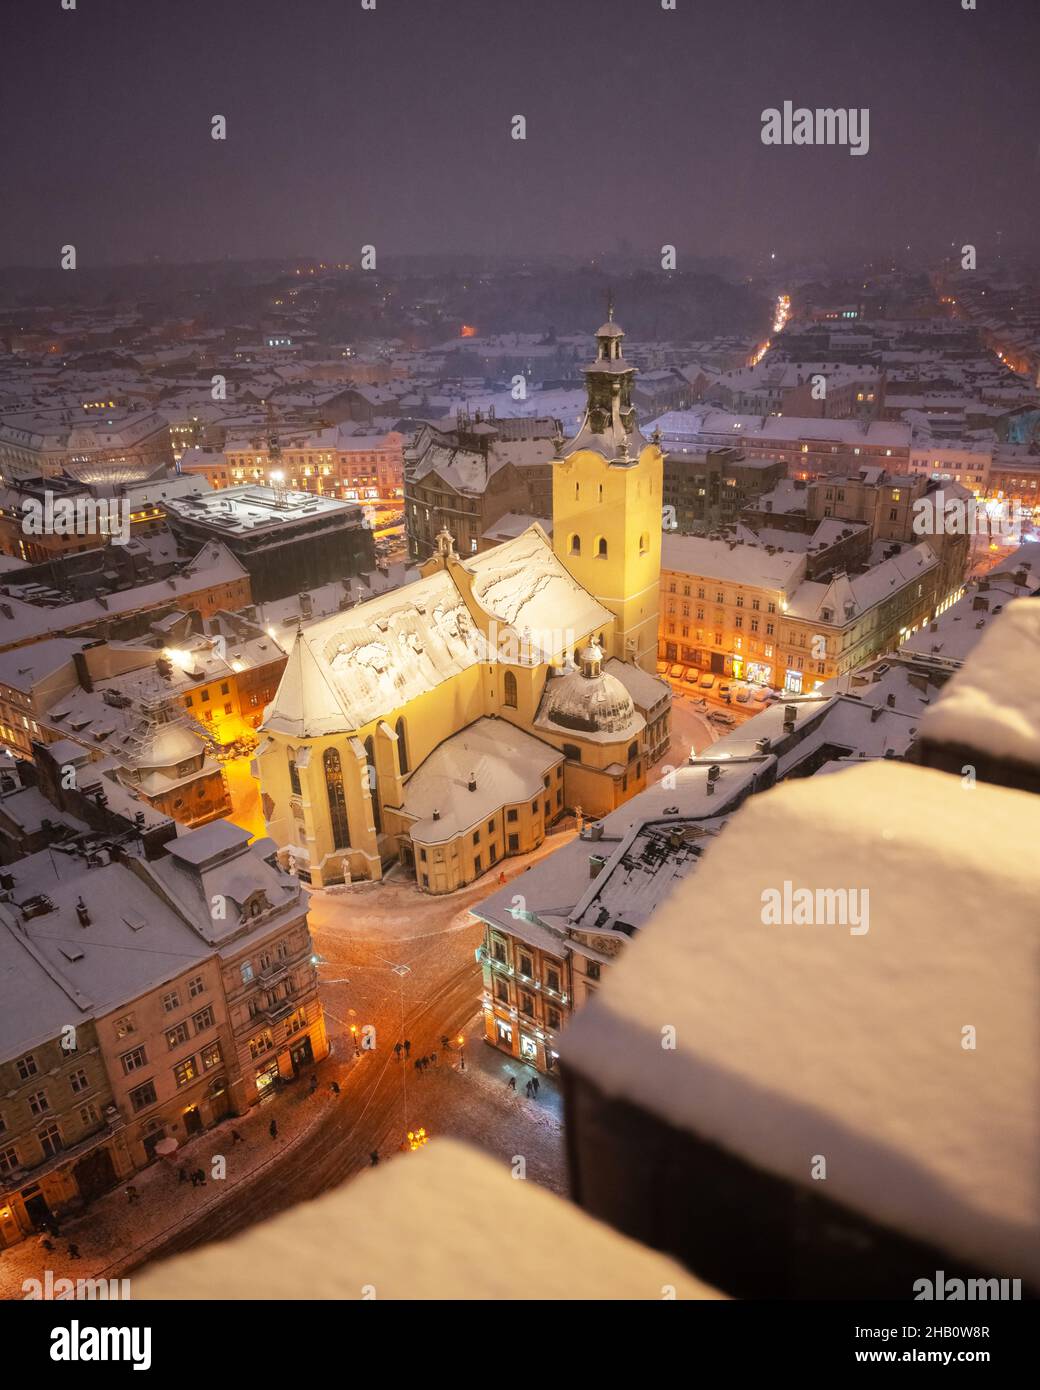 Magnifique paysage urbain d'hiver Lviv avec des toits couverts de neige du sommet de l'hôtel de ville, Ukraine, Europe.Cathédrale latine illuminée par les lumières de la ville.Photographie de paysage Banque D'Images